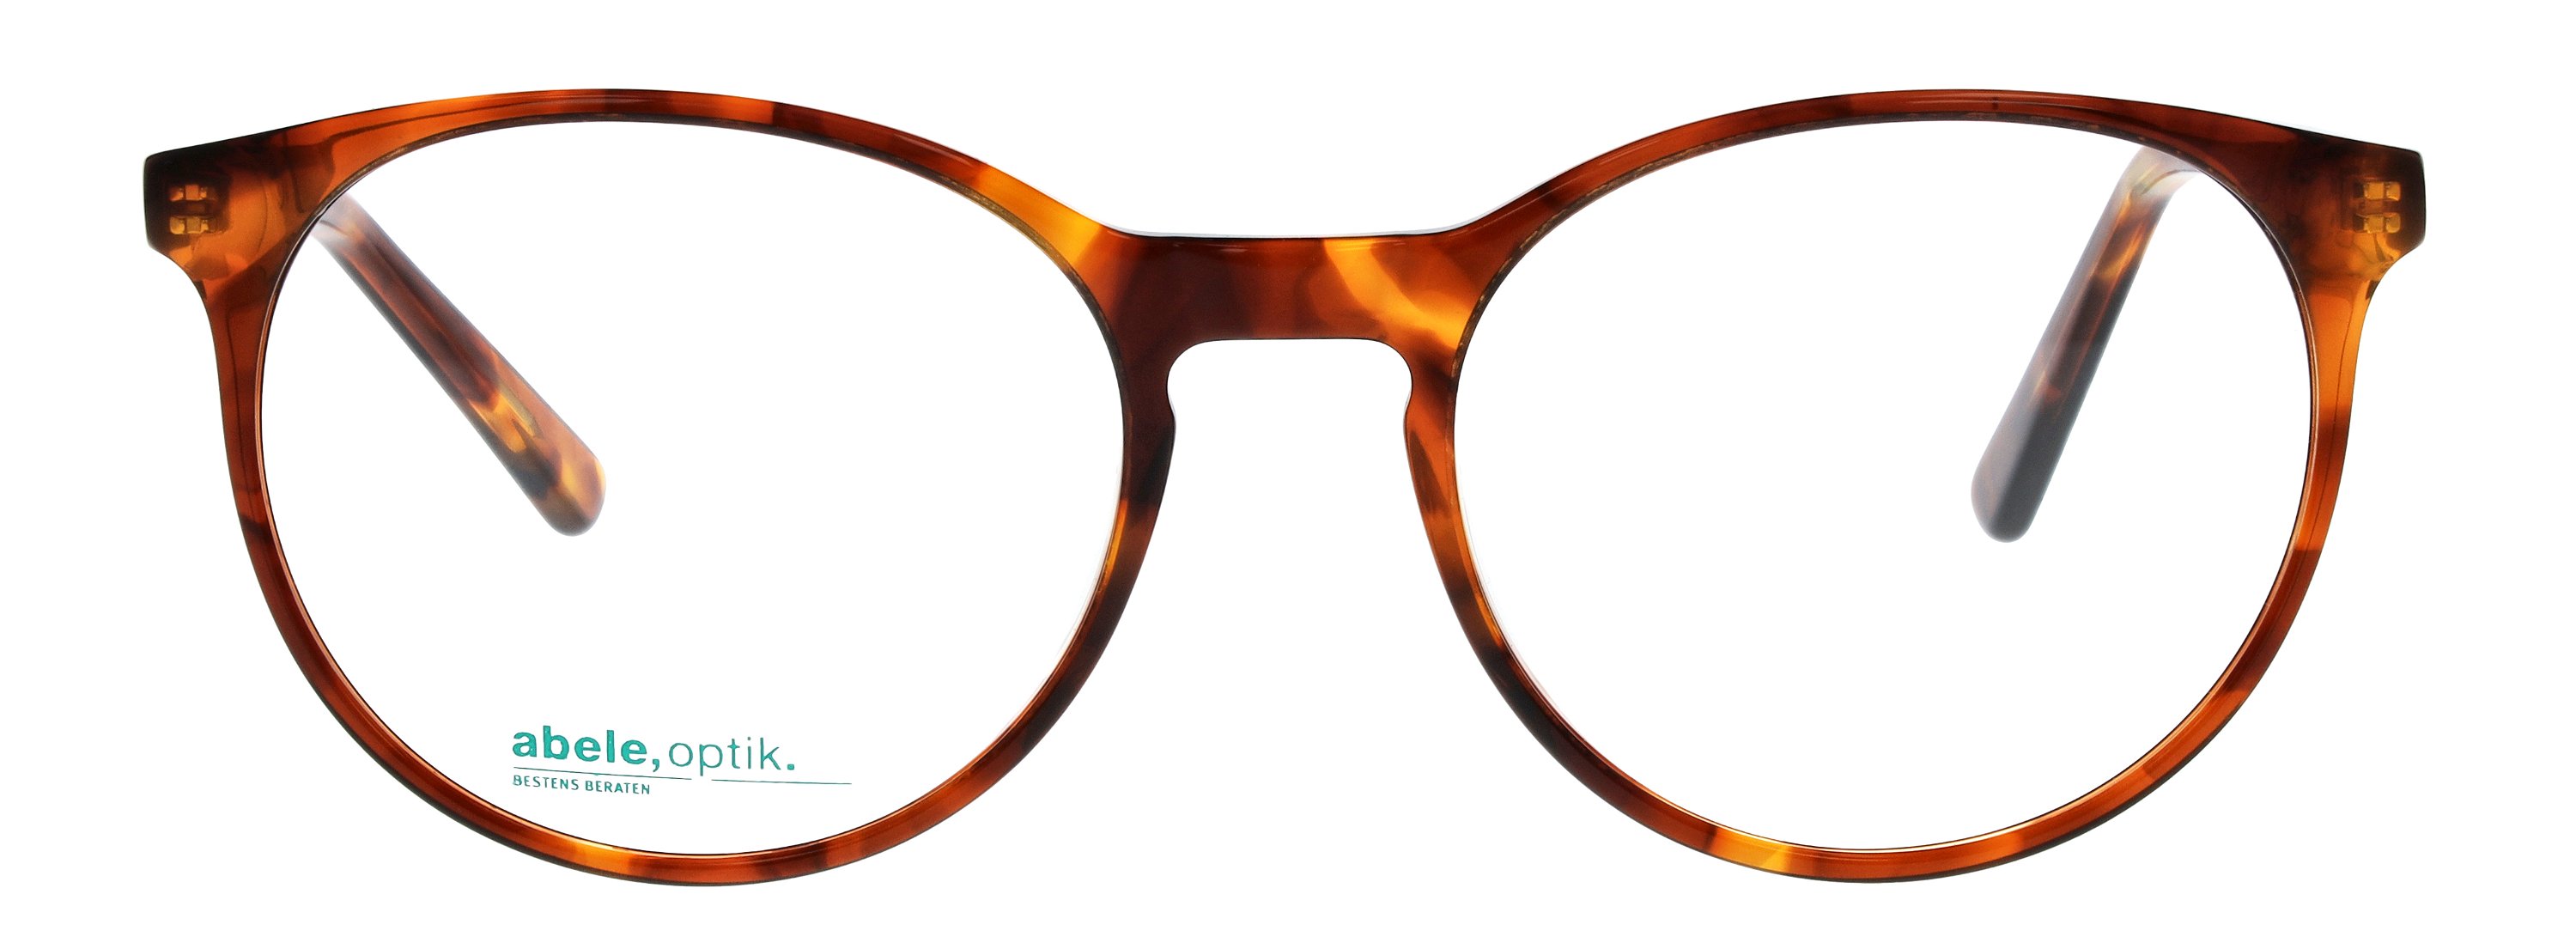 Das Bild zeigt die Korrektionsbrille 148581 von der Marke Abele Optik in karamellbraun gemustert.